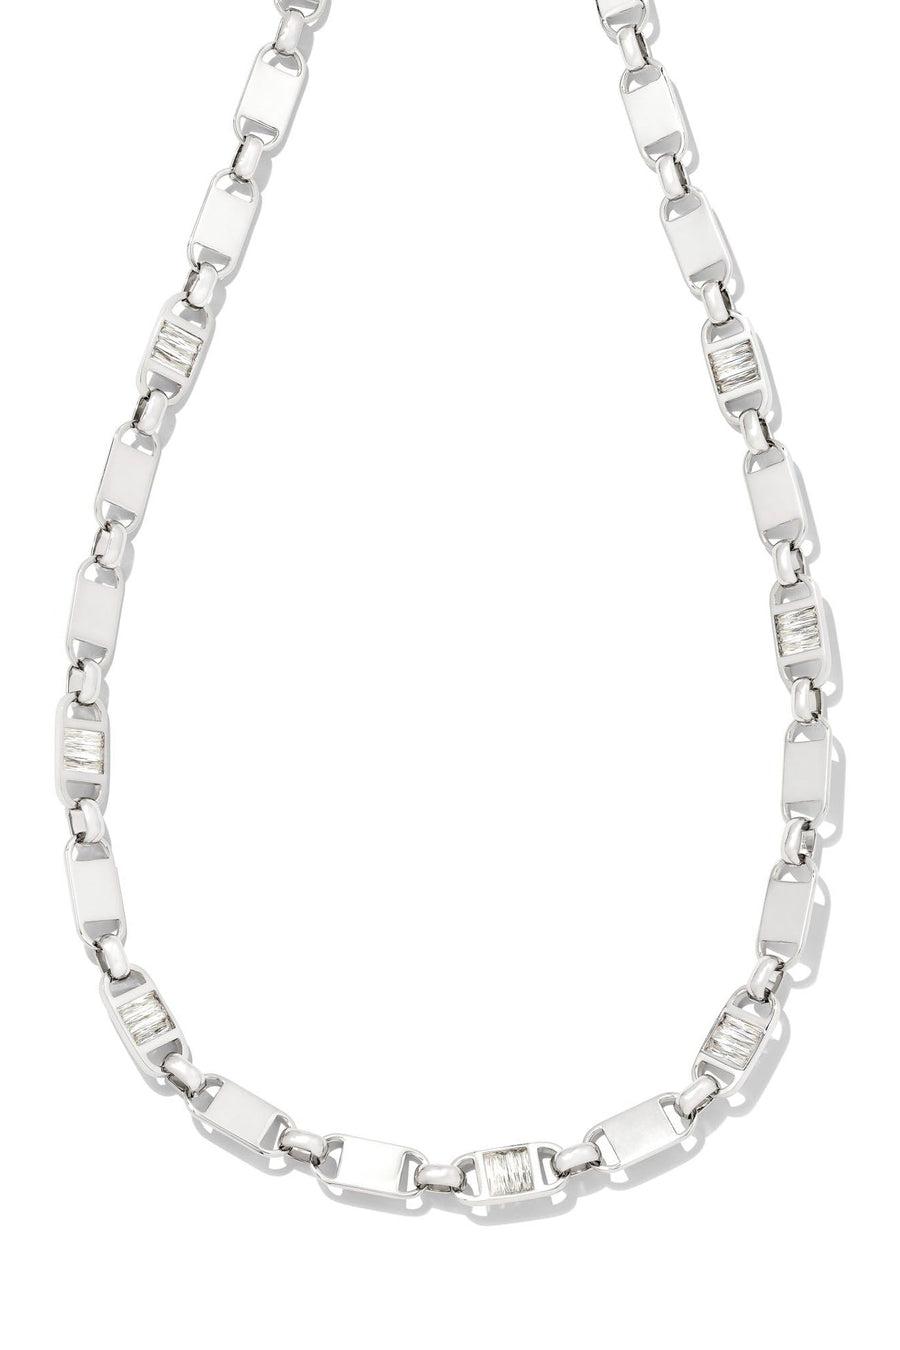 Kendra Scott Jessie Chain Necklace Rhodium White Crystal